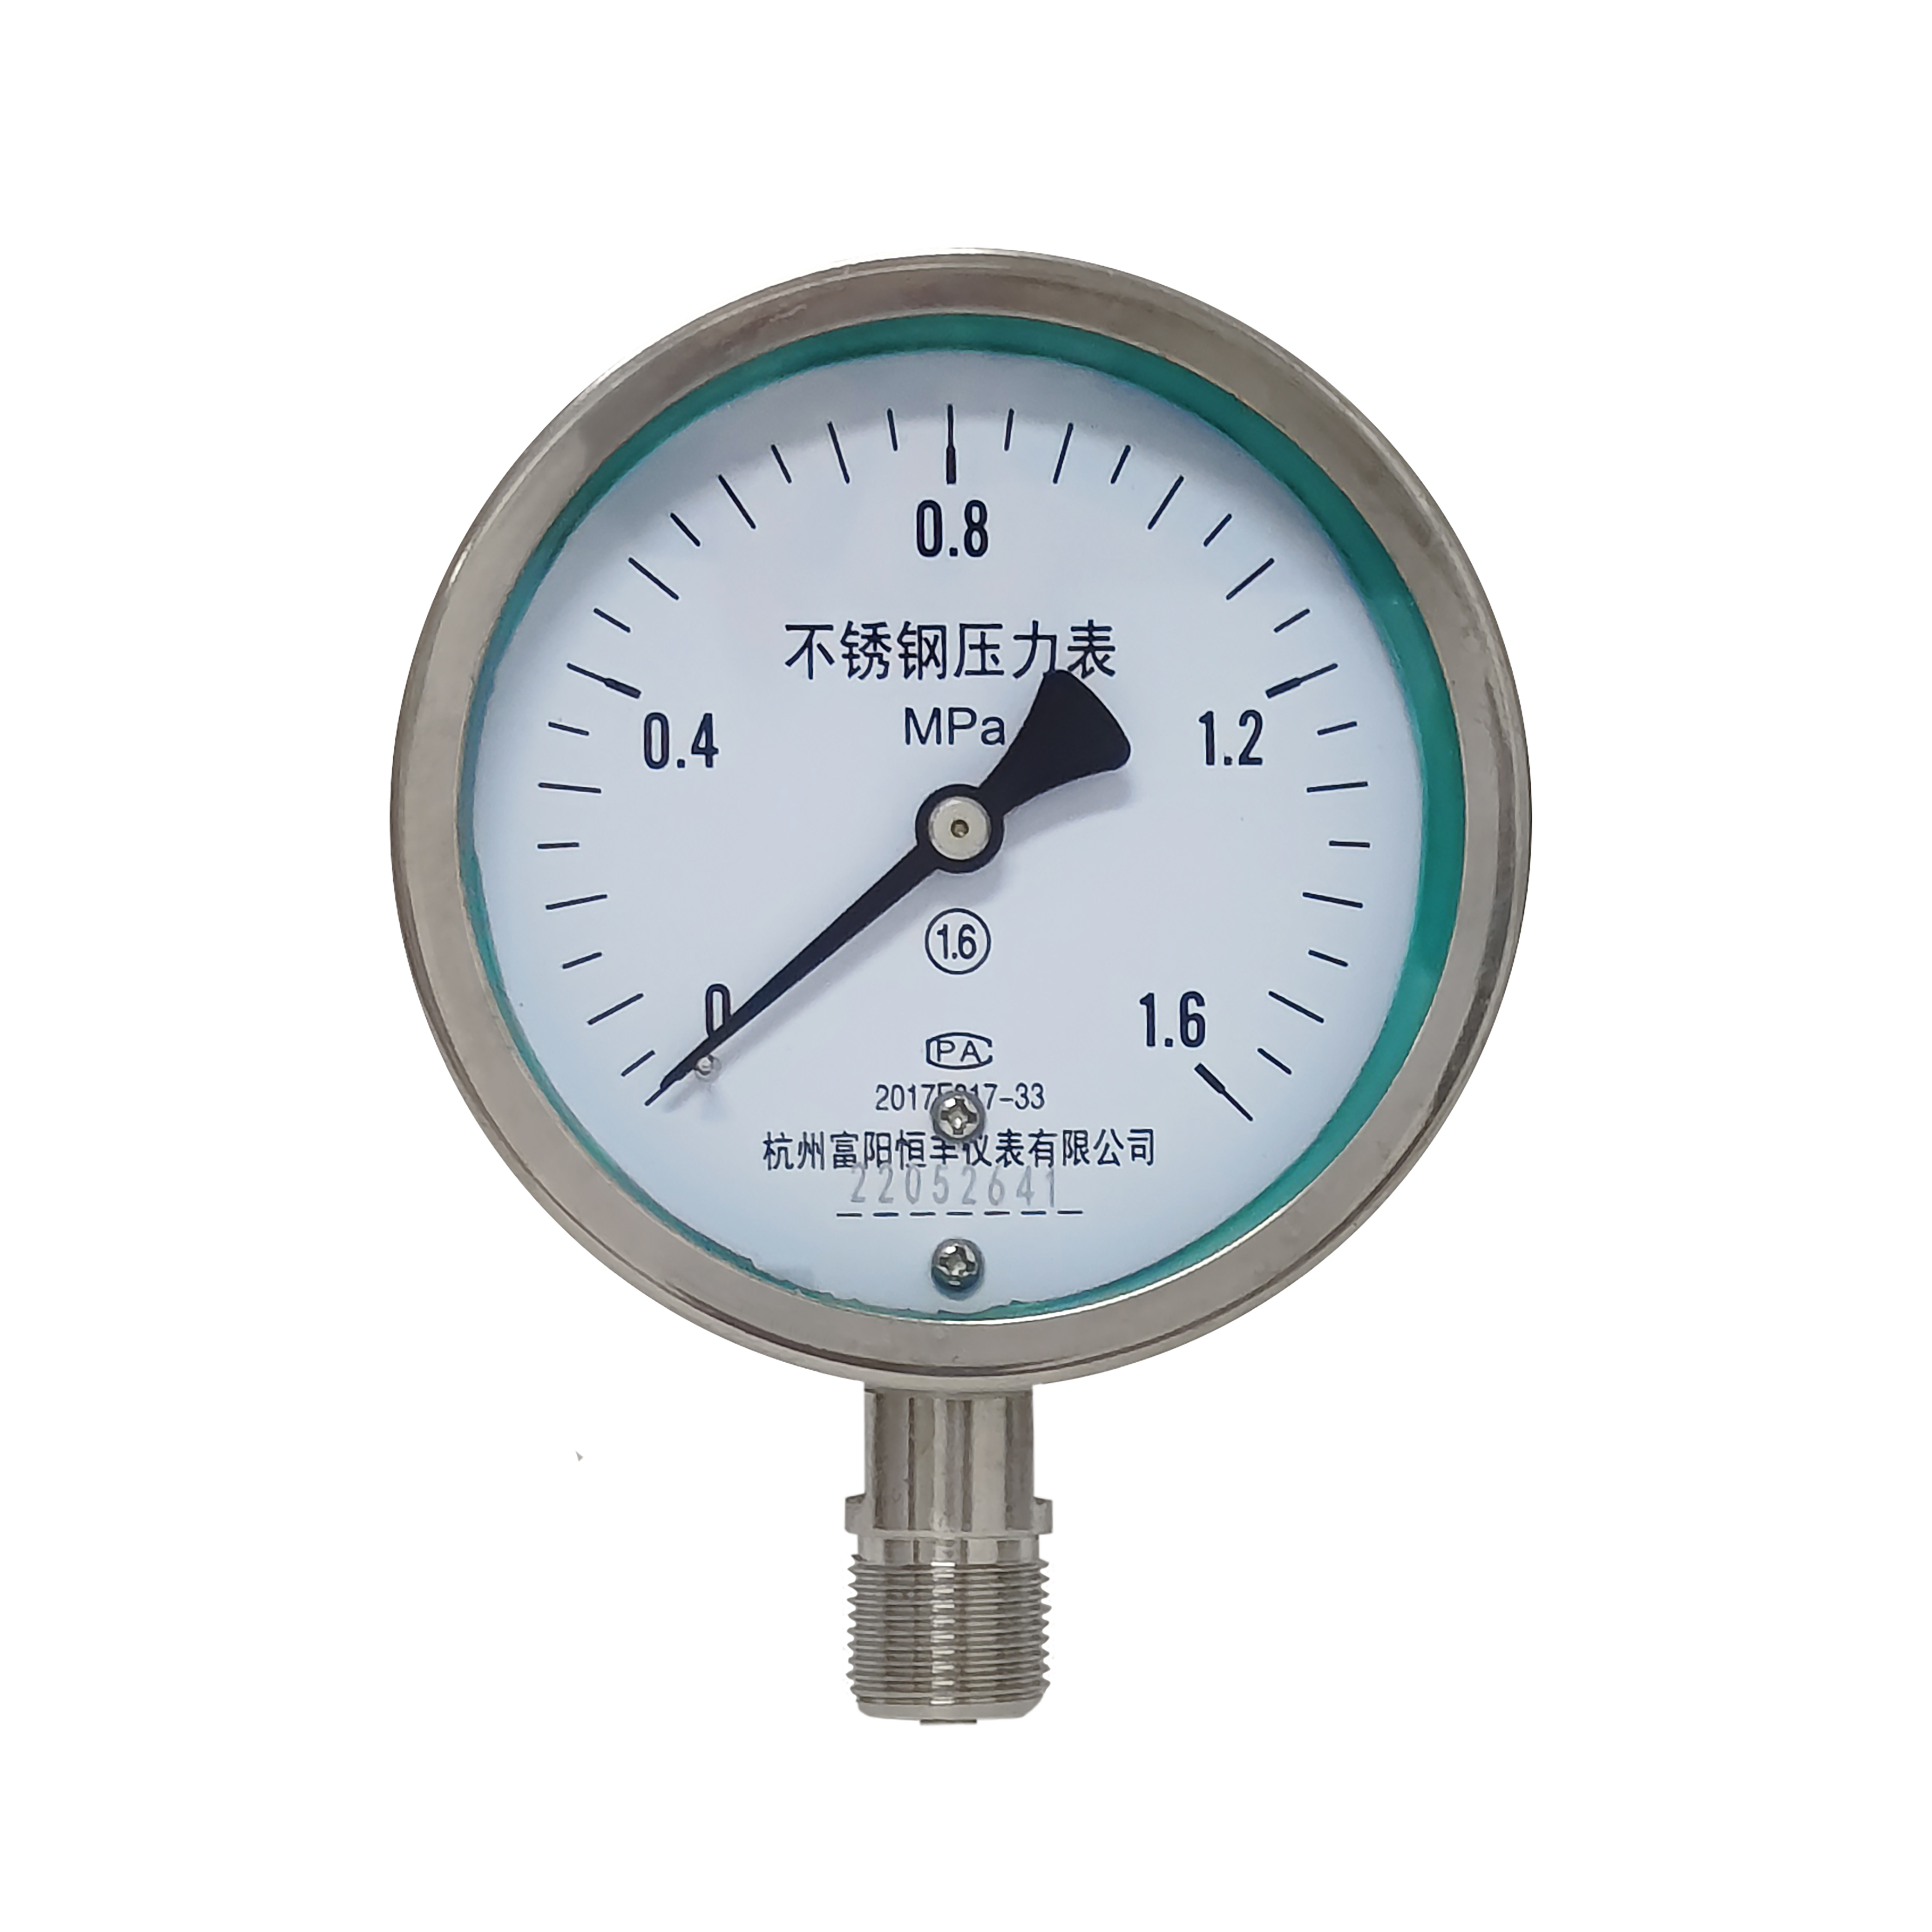 Y100BF stainless steel pressure gauge